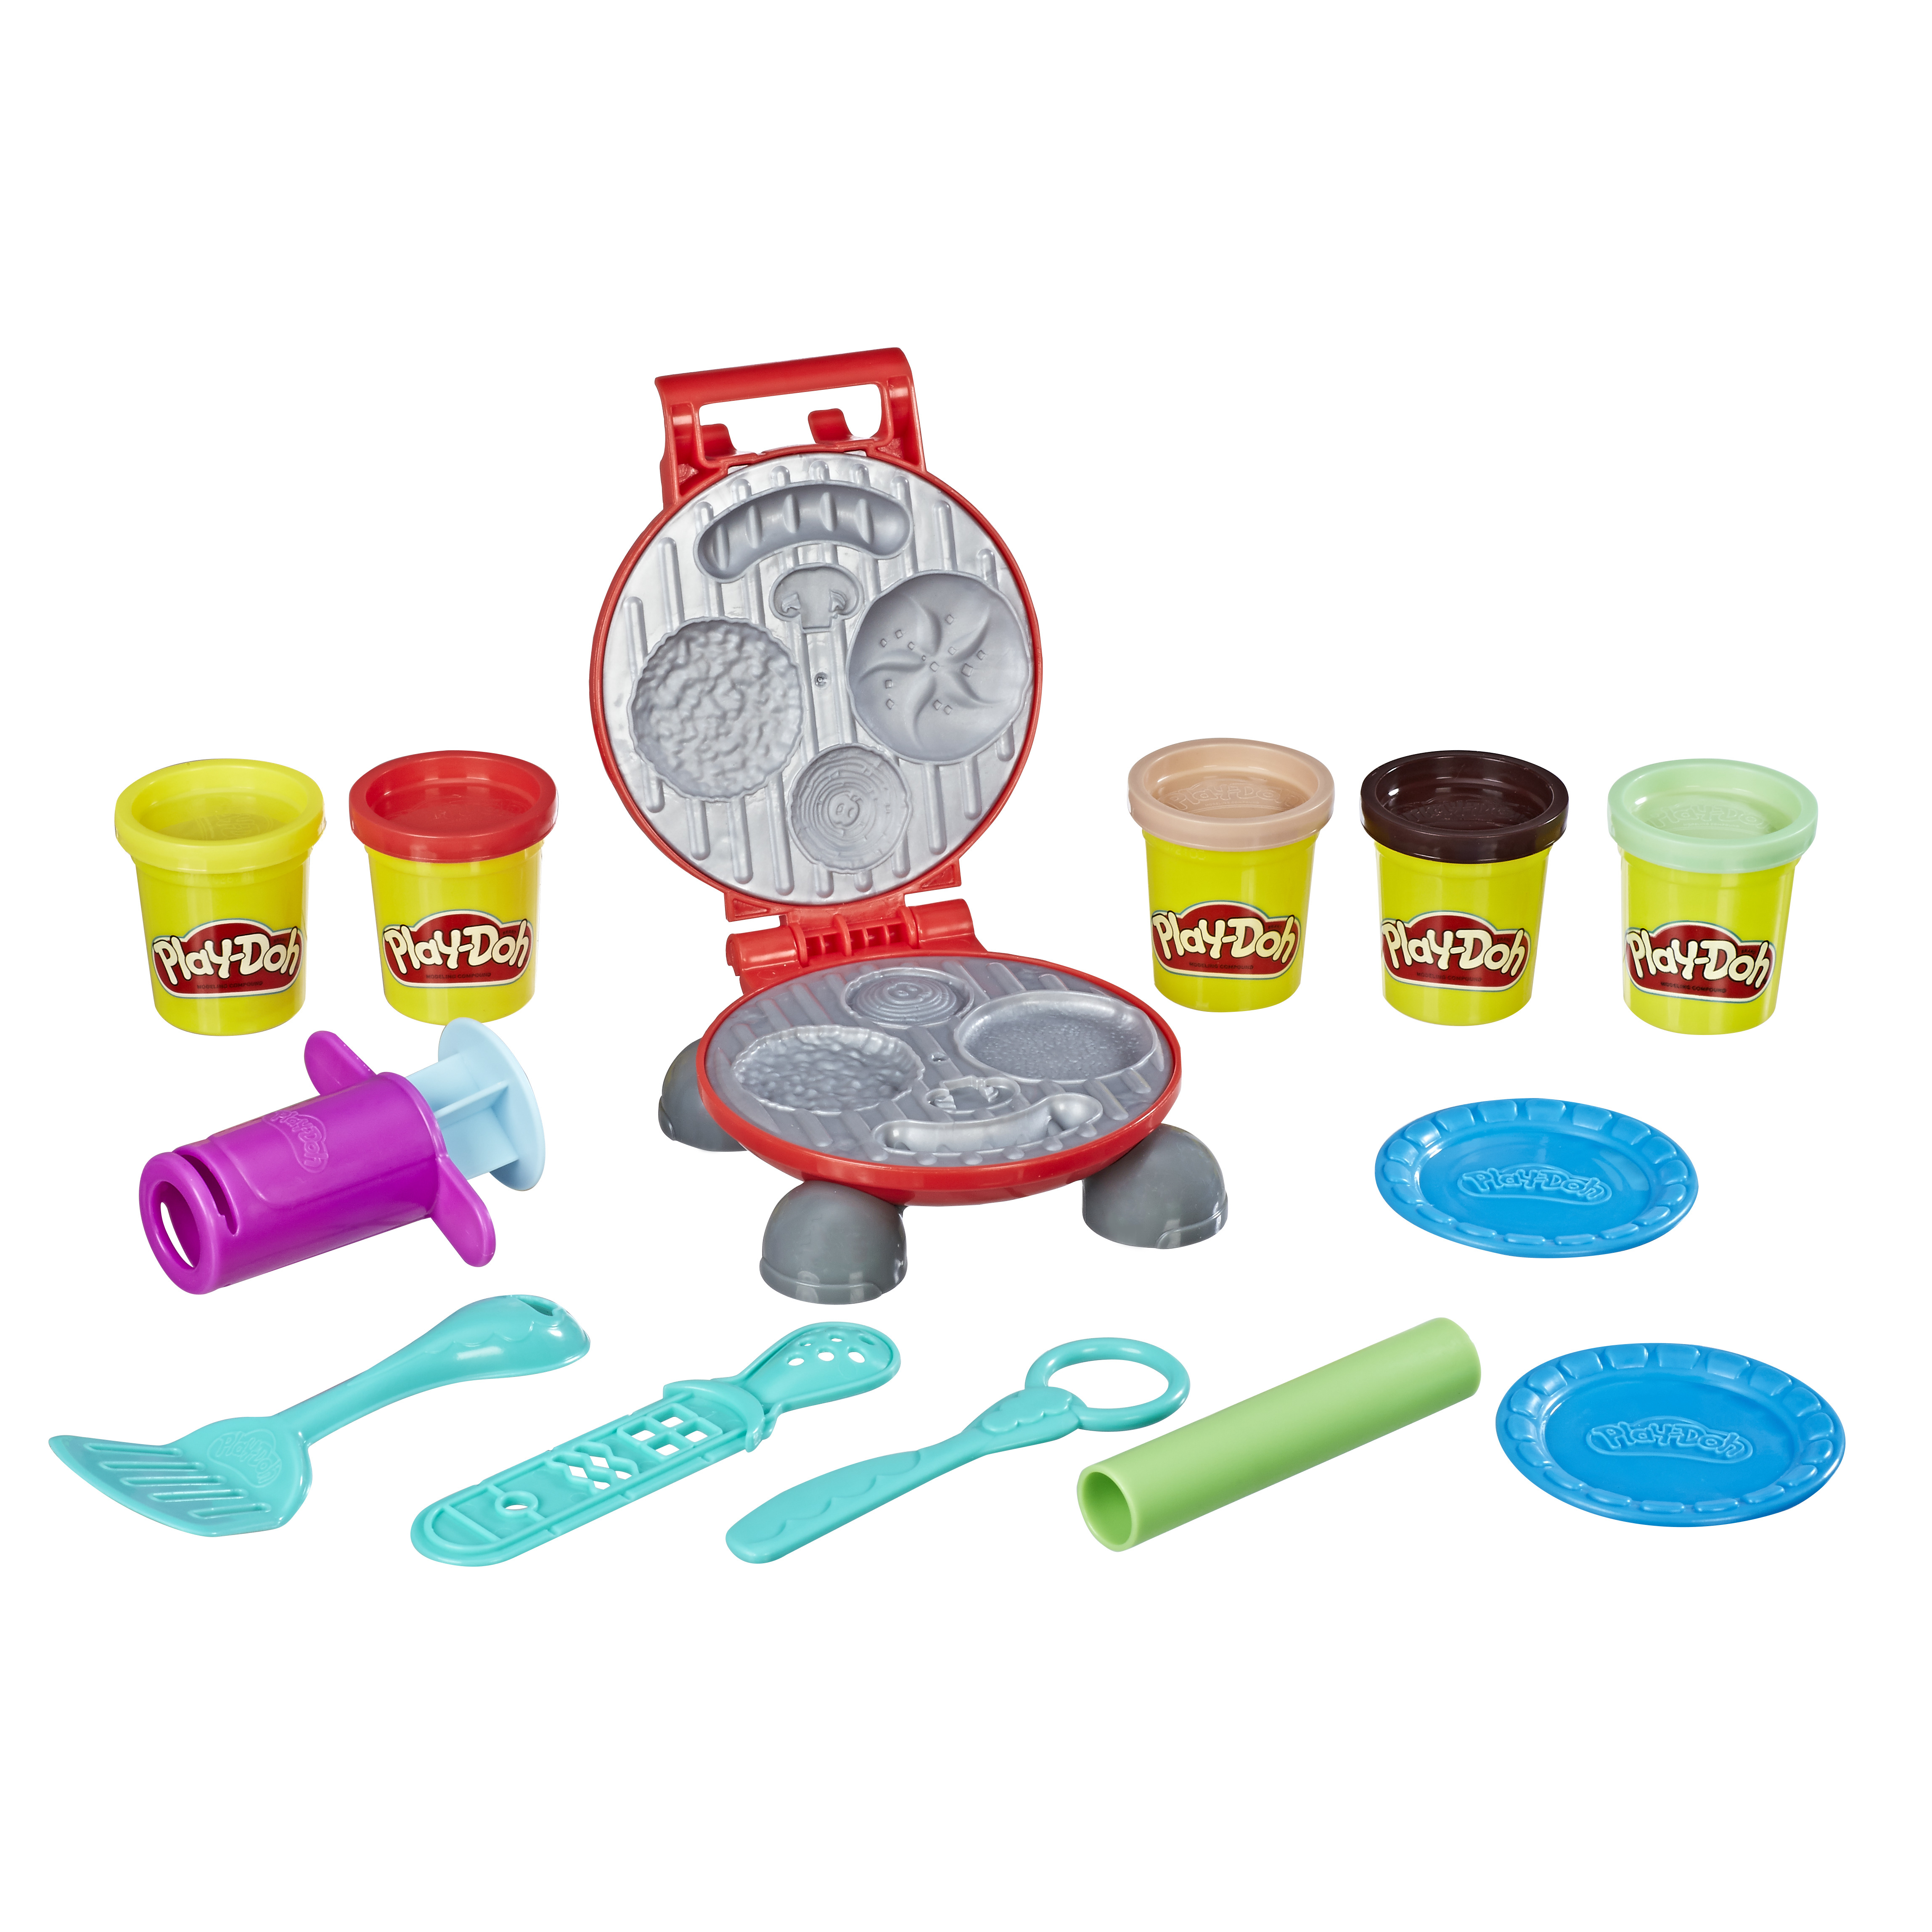 Pâte à modeler Play-Doh Kitchen - Le Croque-monsieur